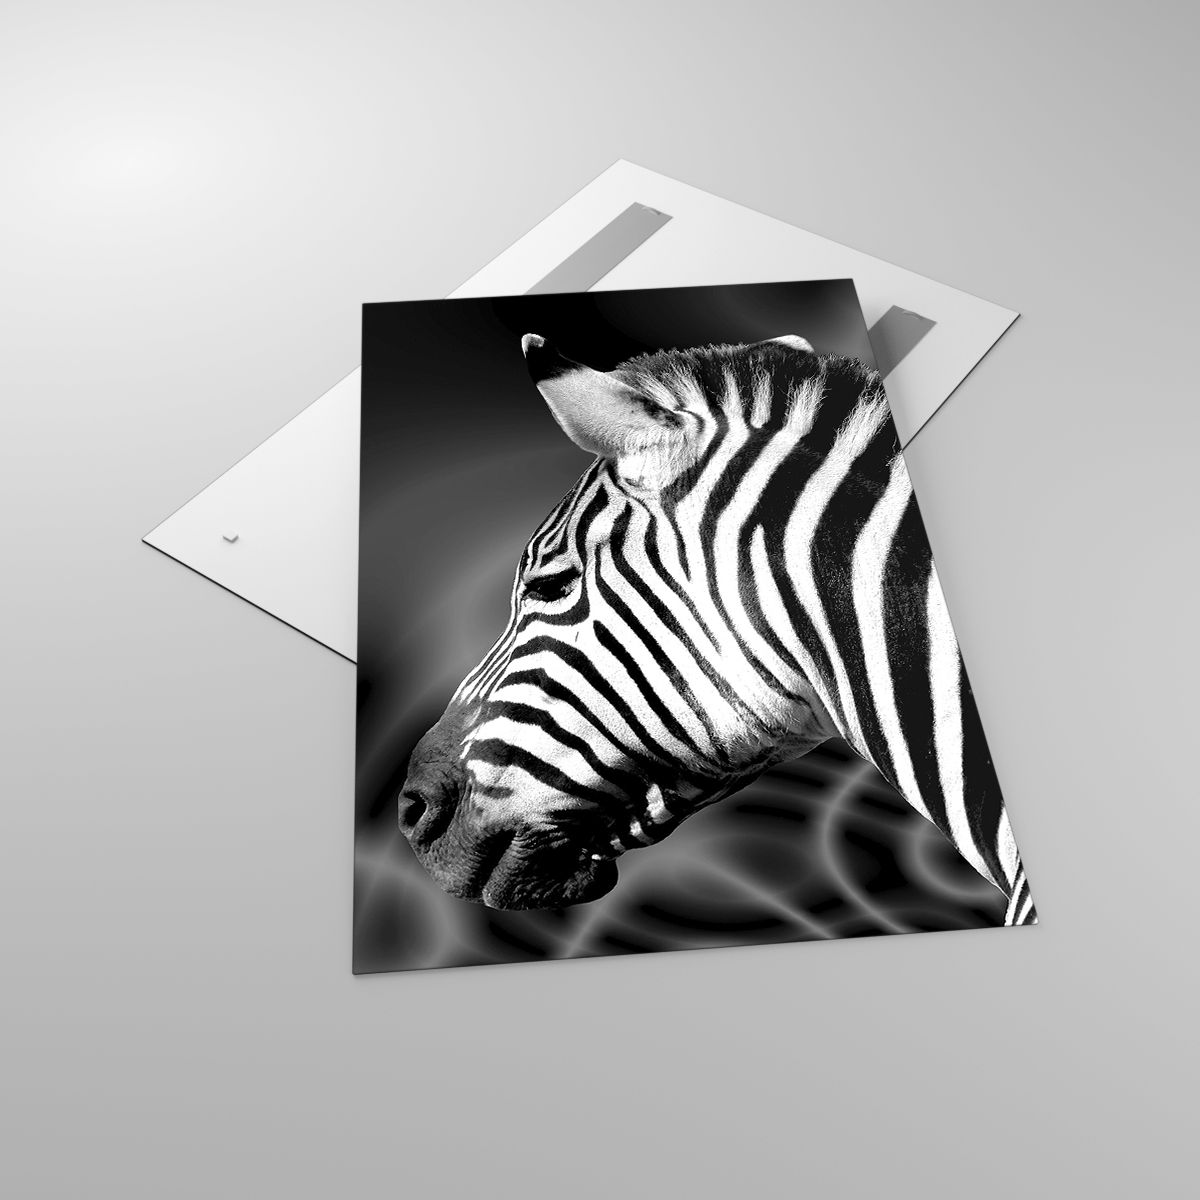 Glasbild Rippen, Glasbild Schwarz Und Weiß, Glasbild Tiere, Glasbild Afrika, Glasbild Natur